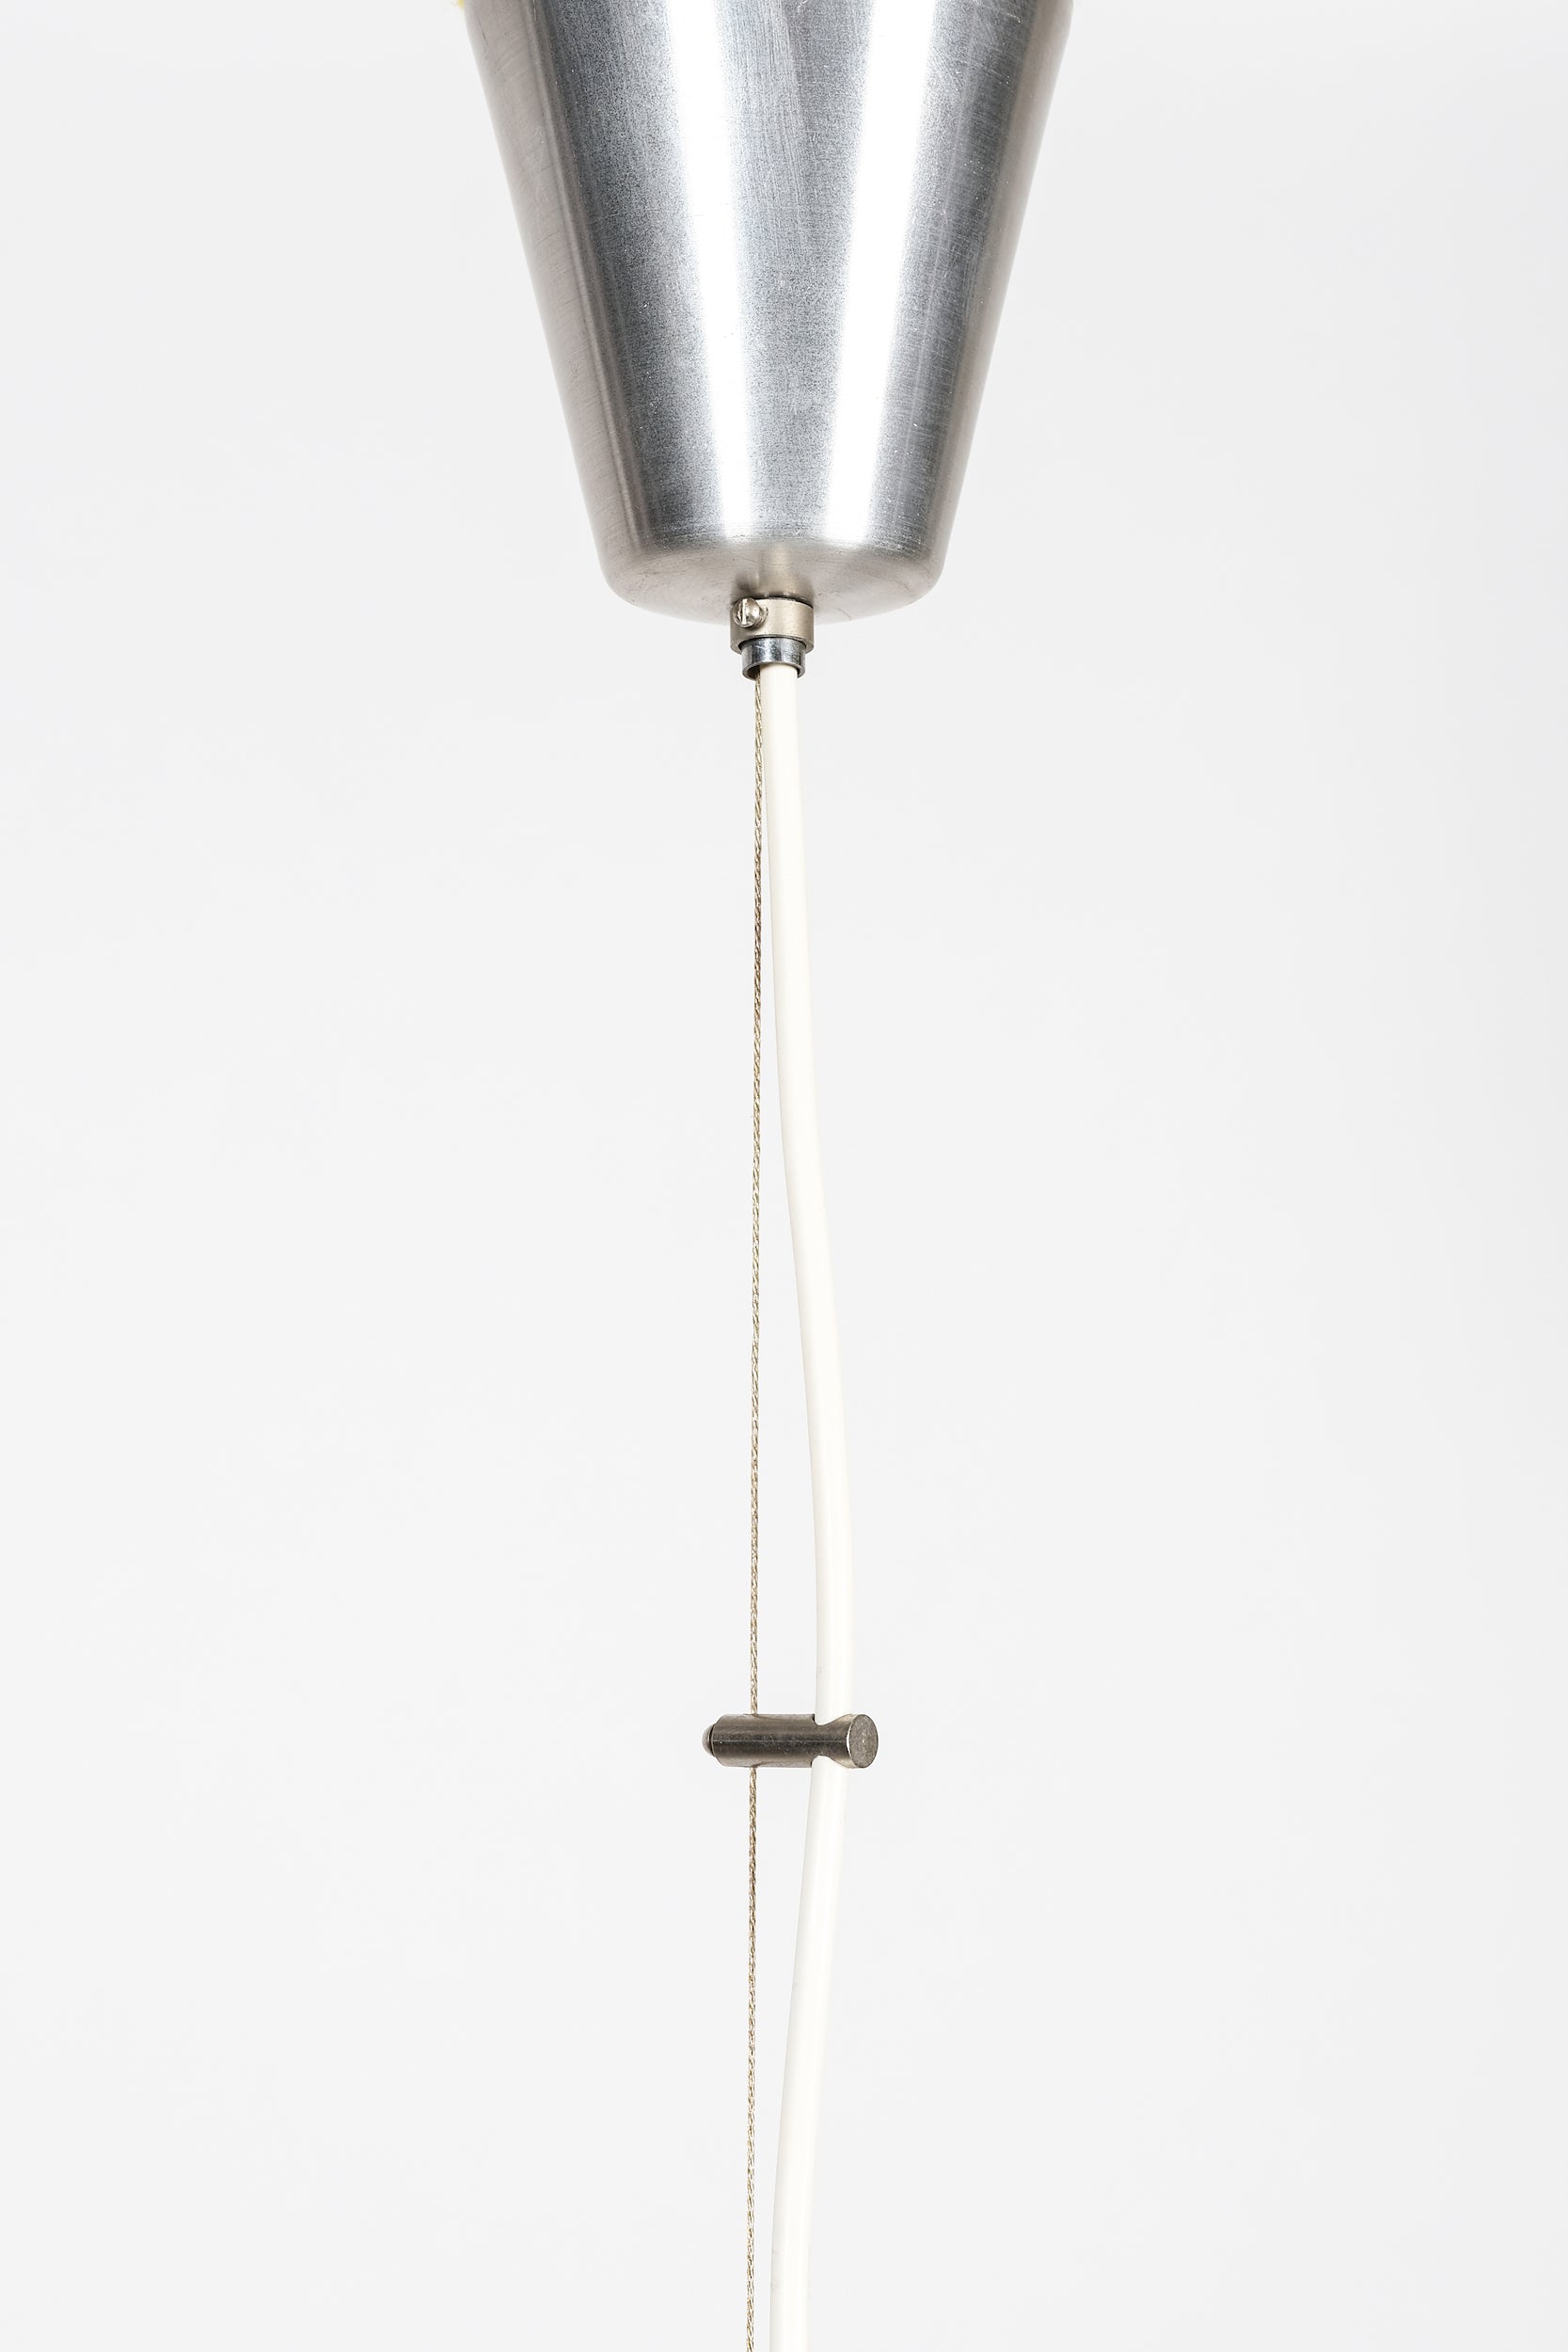 Mazzega Space Age Überfangglas-Lampe, 50er